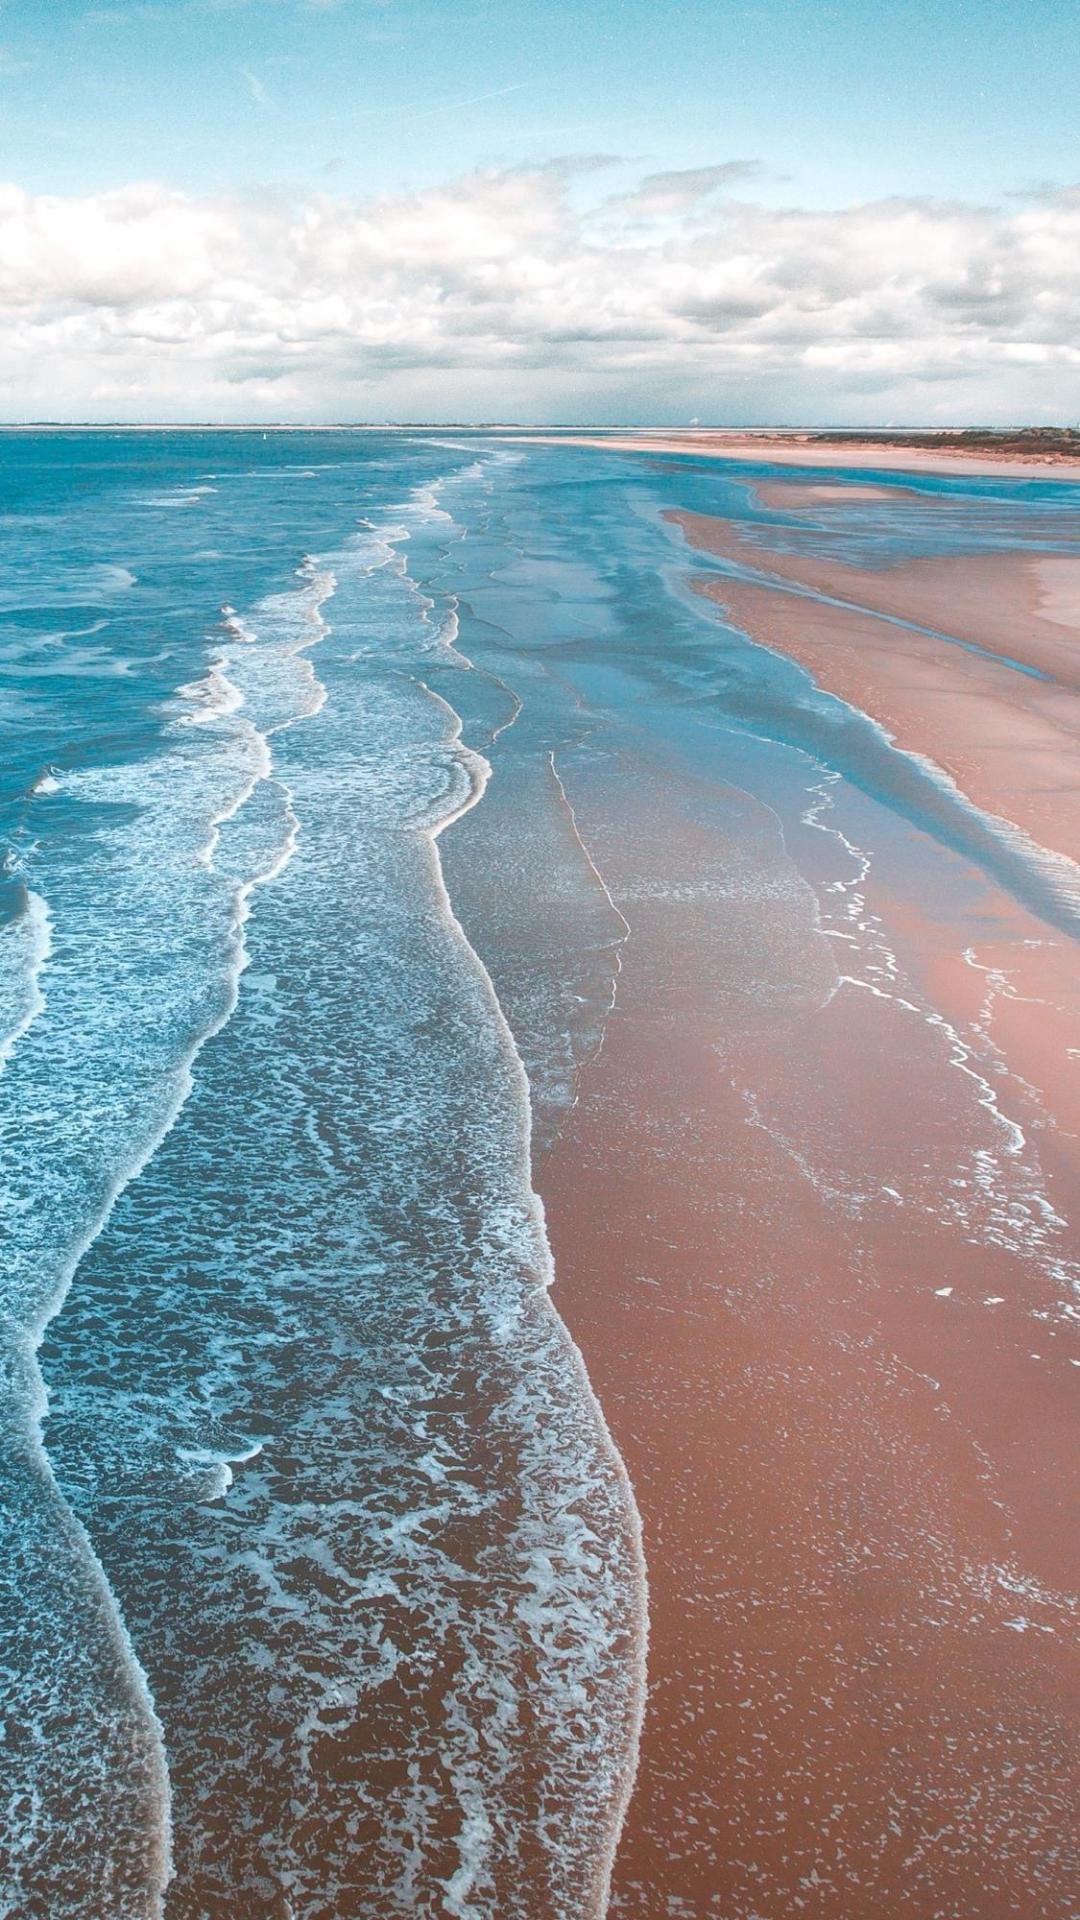 湛蓝色的海洋景色 高清图片 手机壁纸